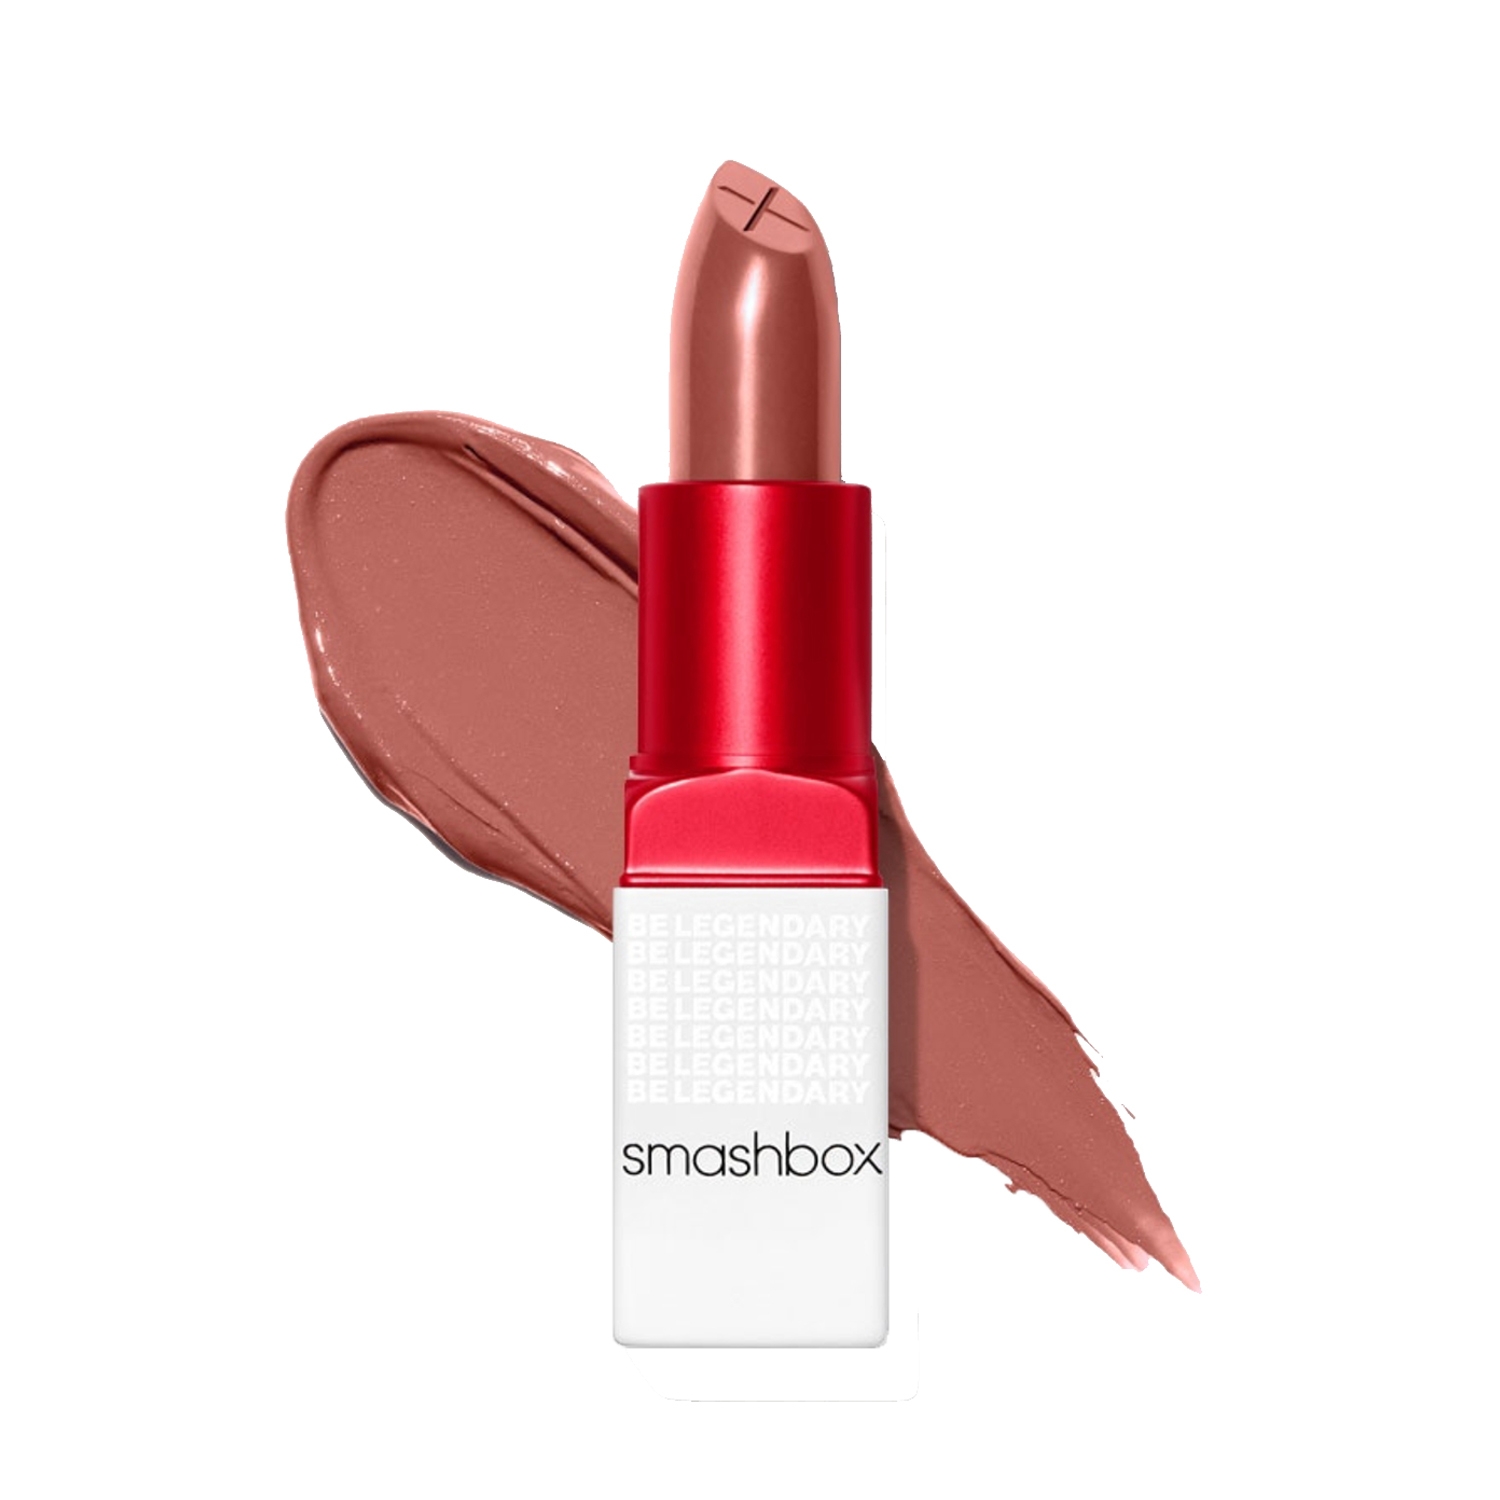 Smashbox | Smashbox Be Legendary Prime & Plush Lipstick - Rose Nude (3.4g)